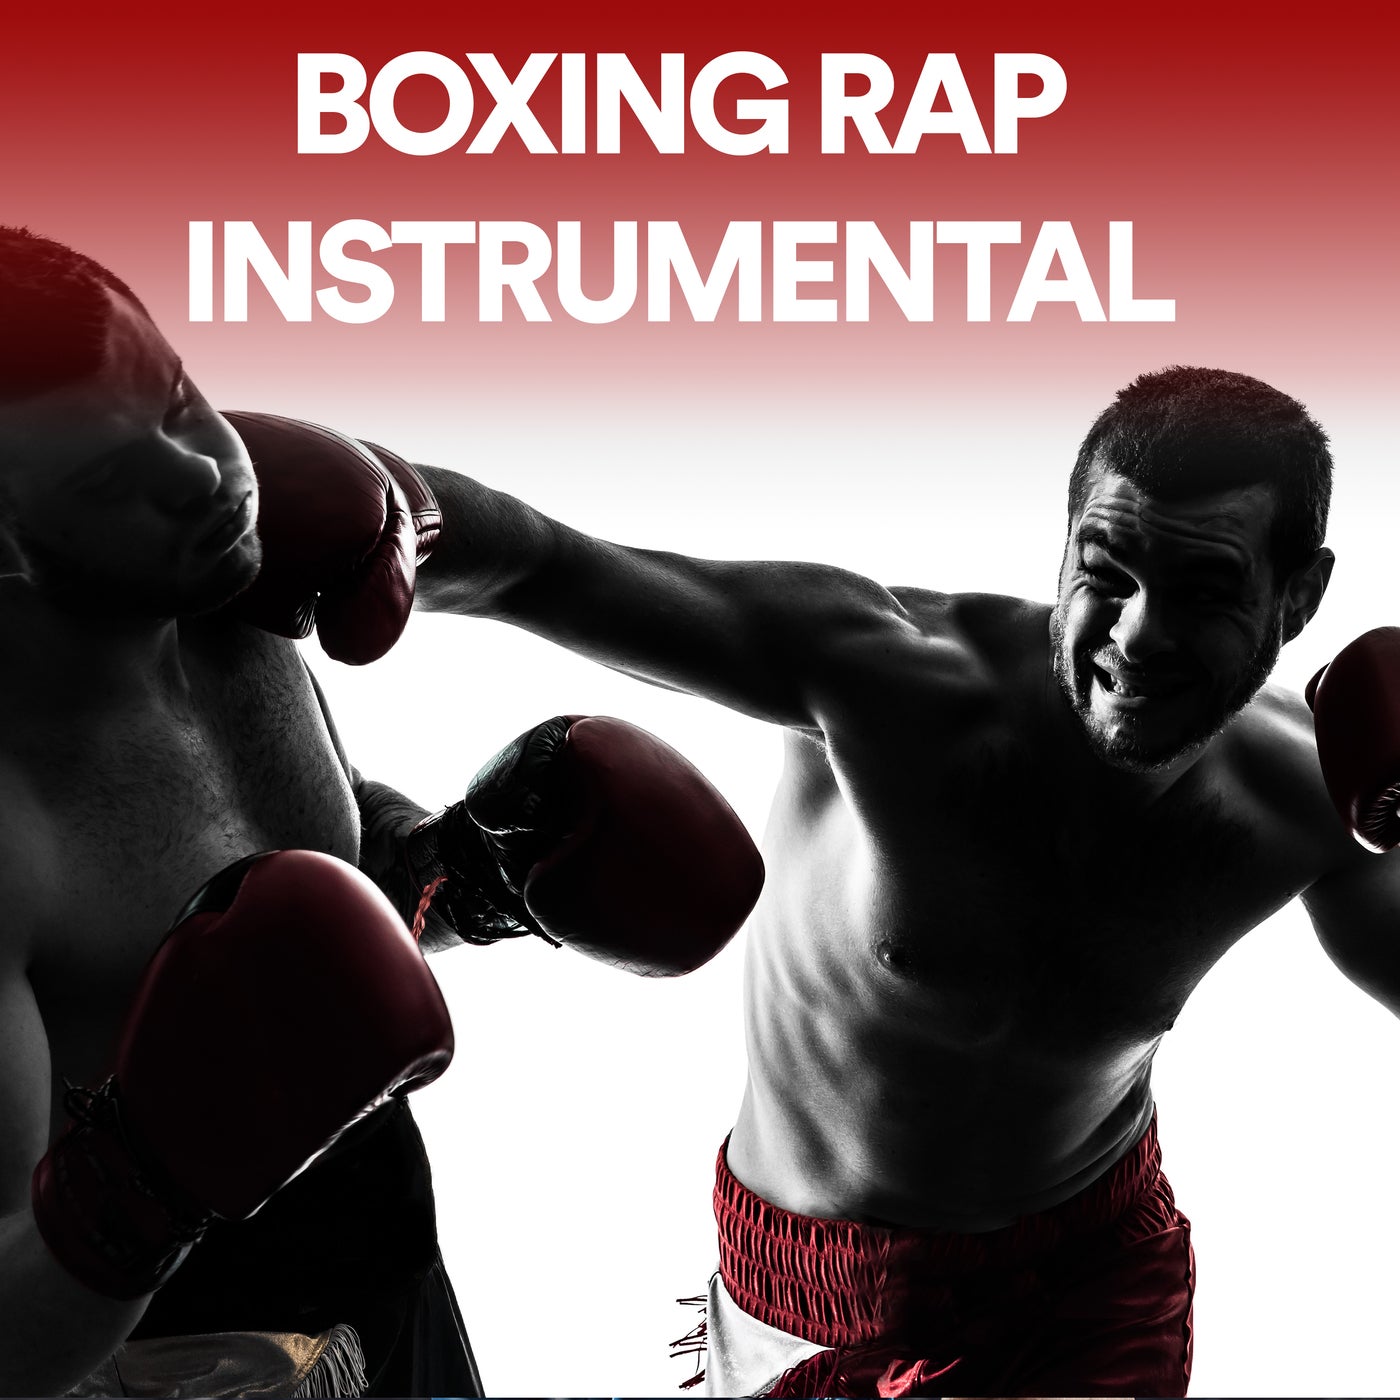 Boxing Rap Workout Music and DJ Edits on Beatsource